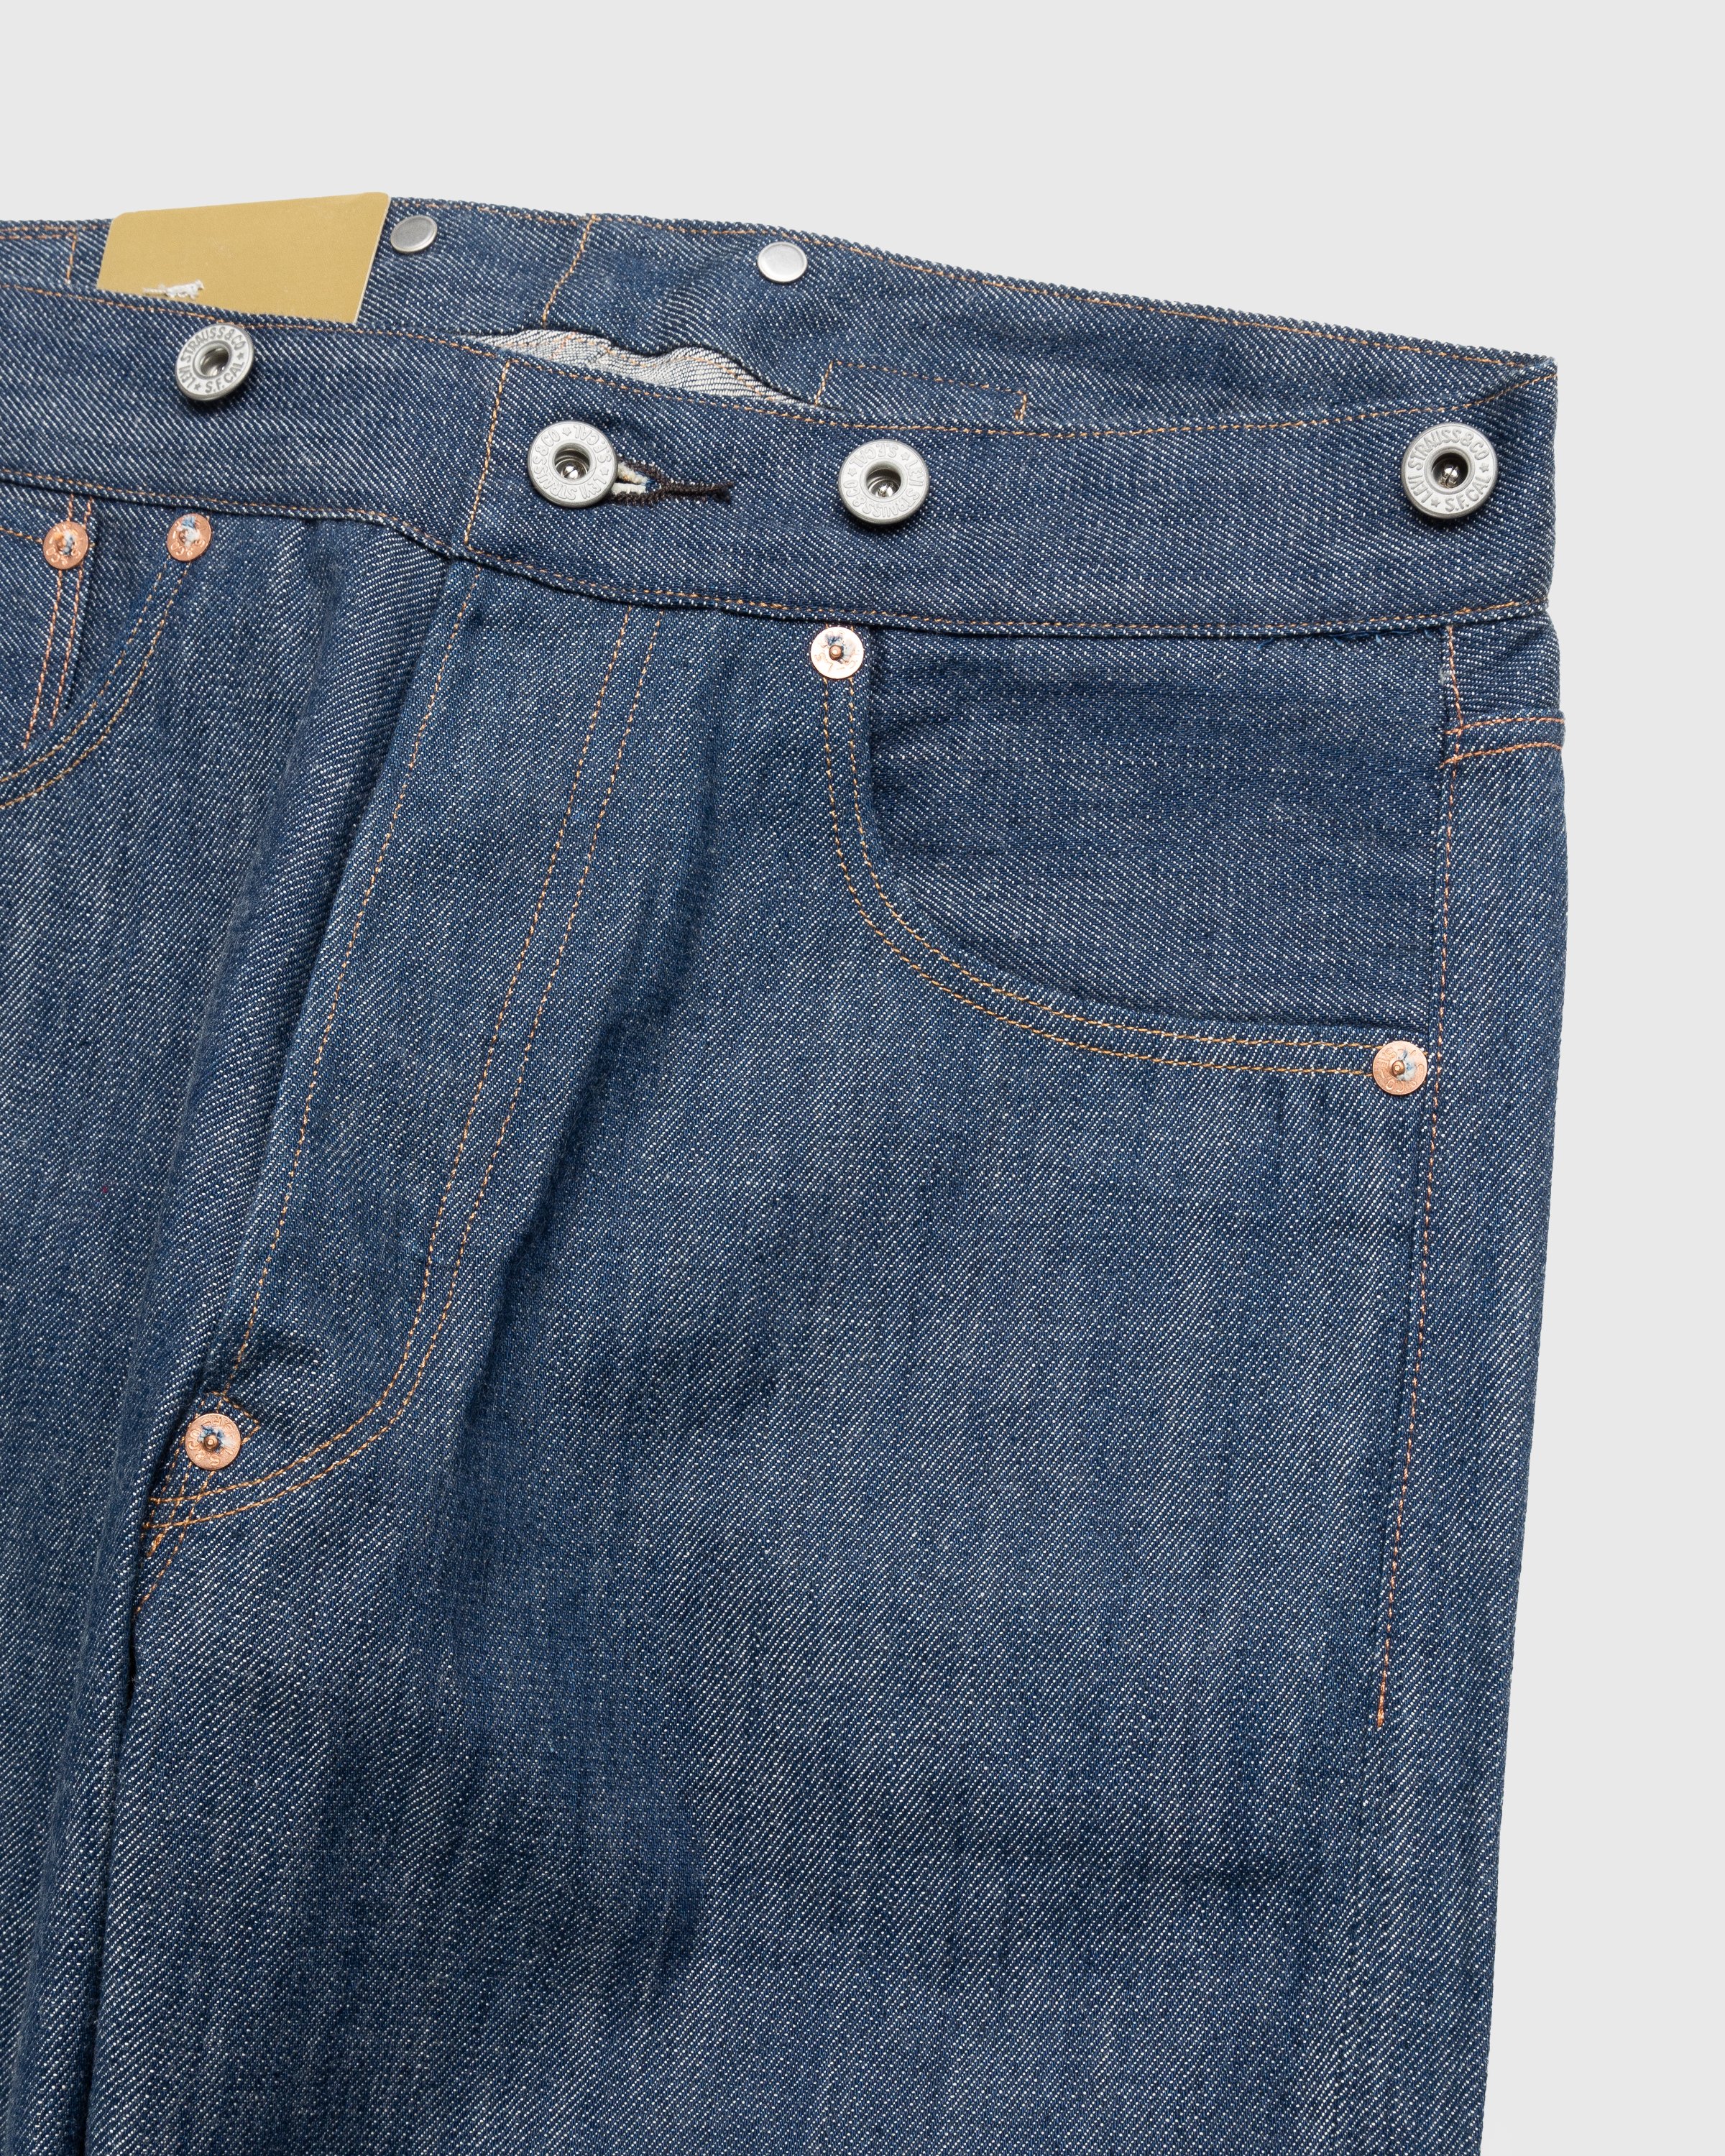 Levi's - 1901 501 Jeans Dark Indigo Flat Finish - Clothing - Blue - Image 6